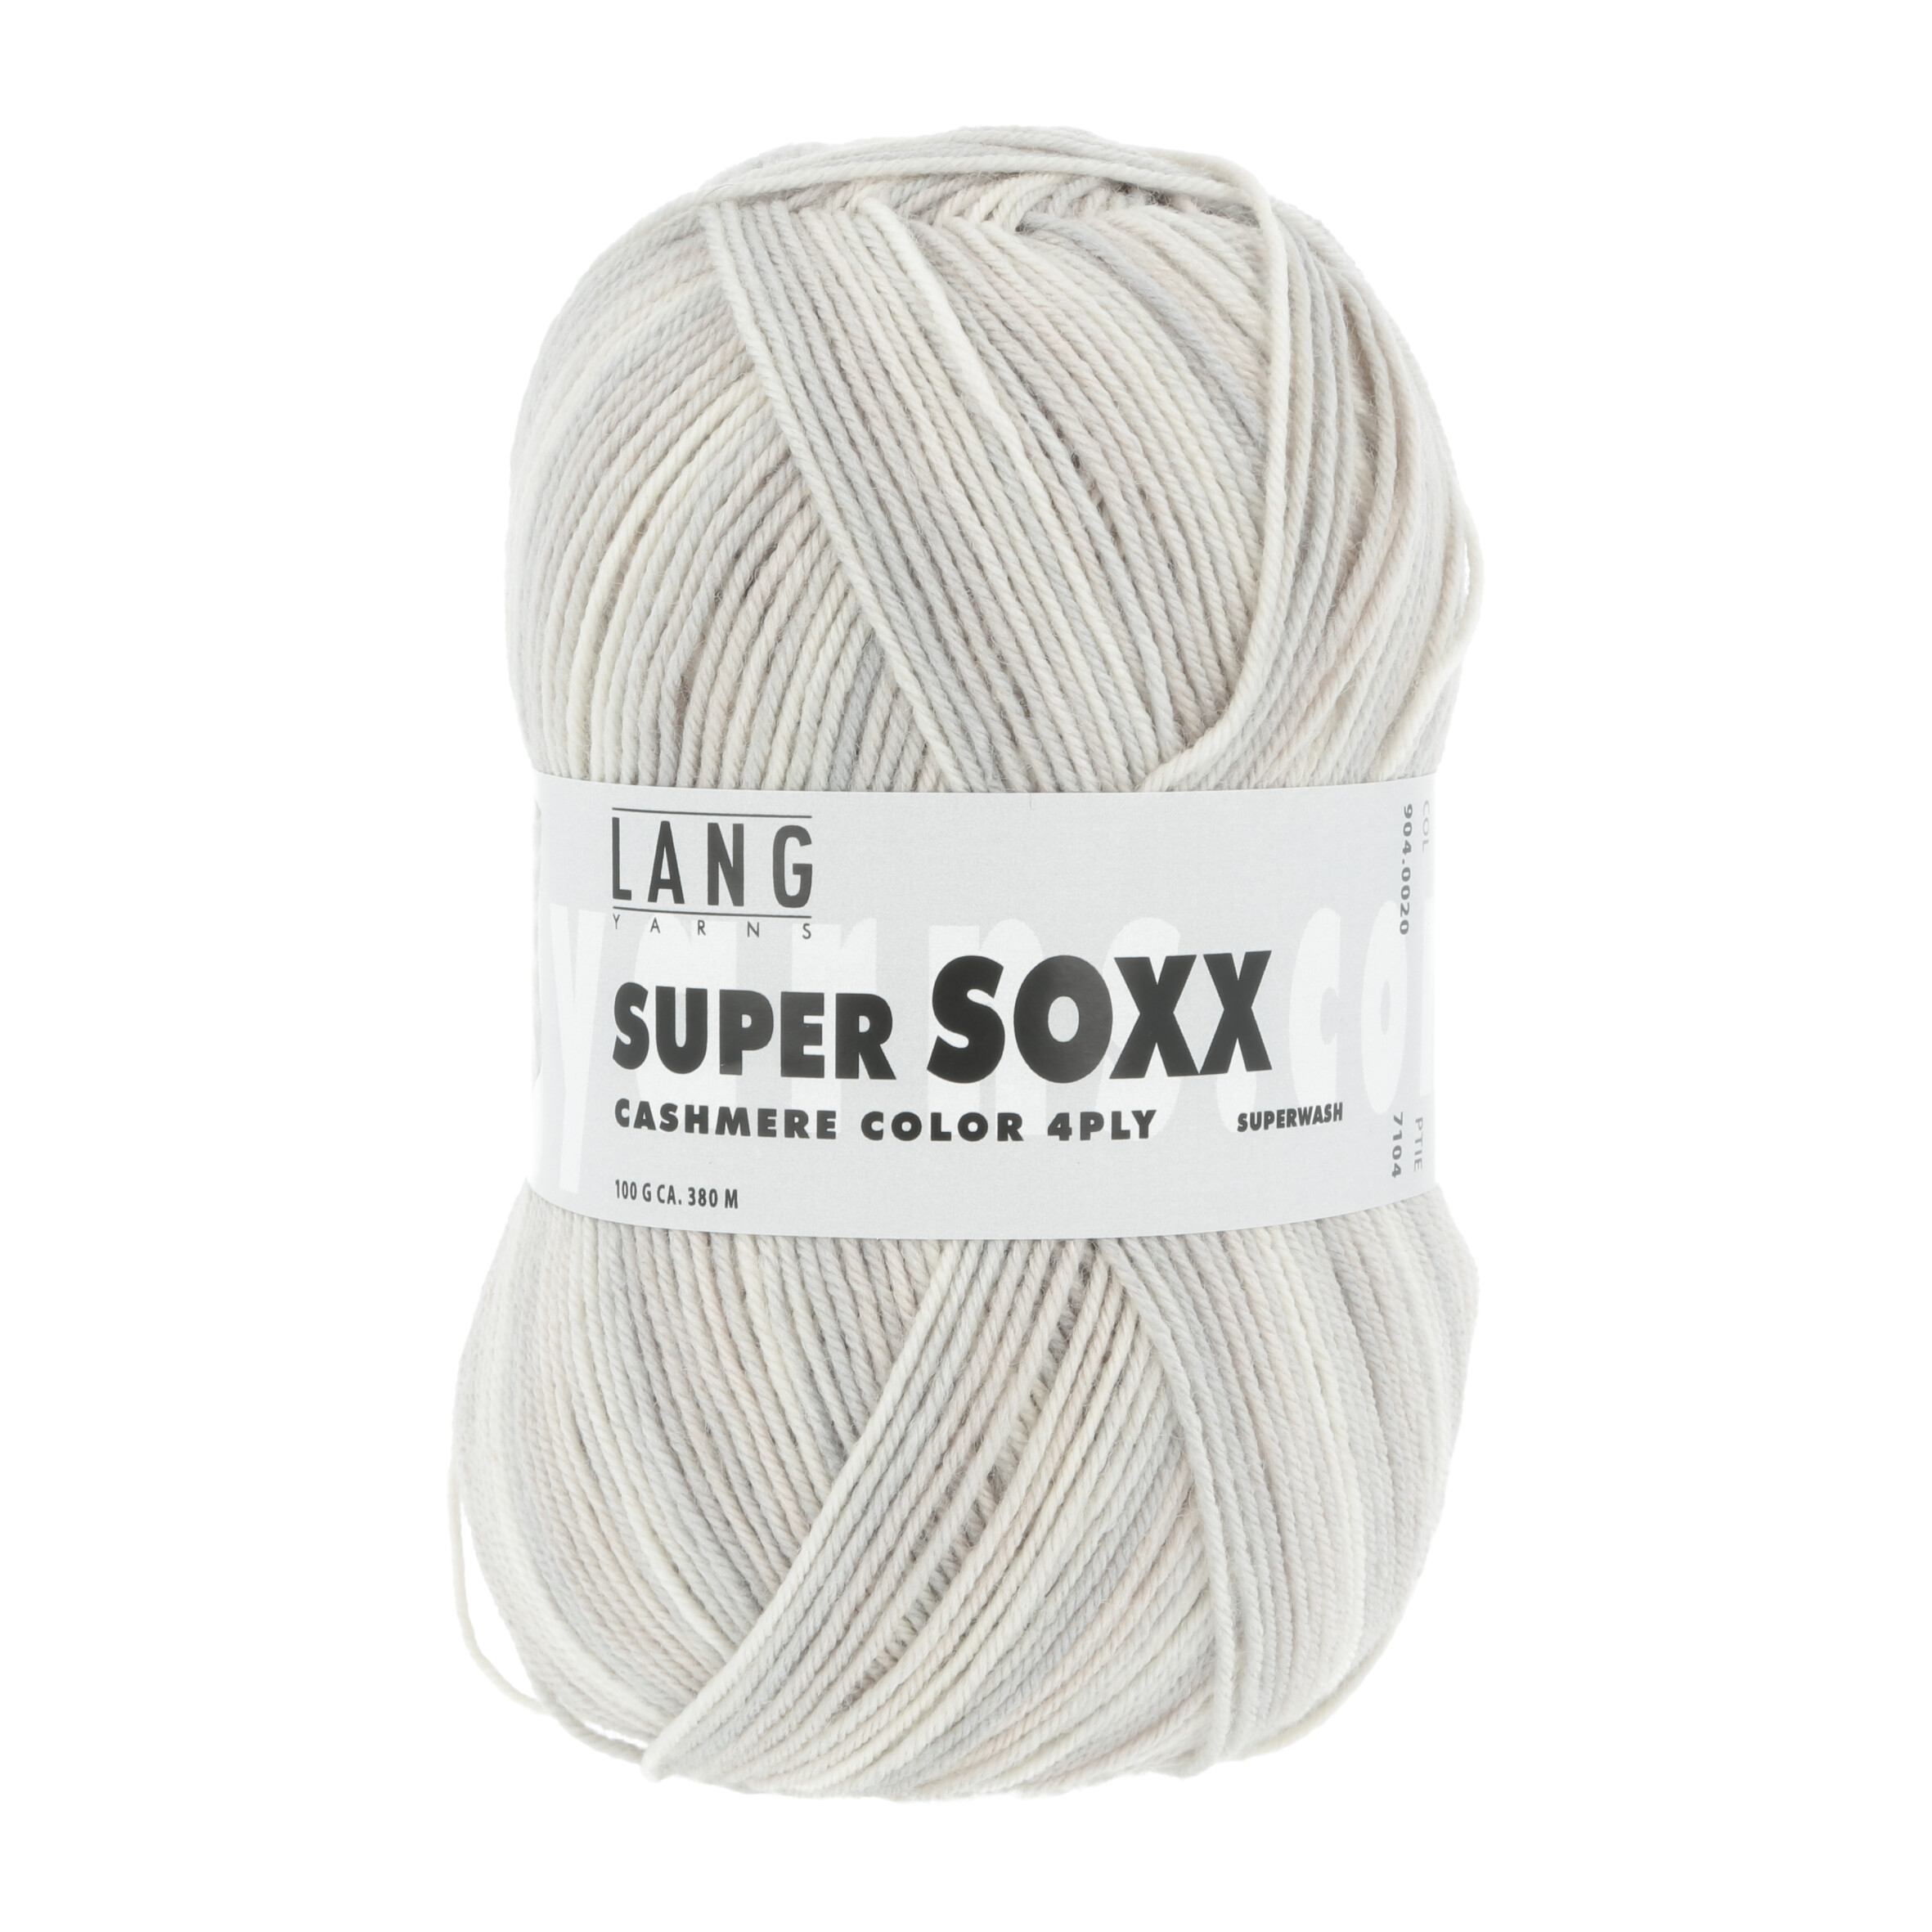 Super Soxx Cashmere Color